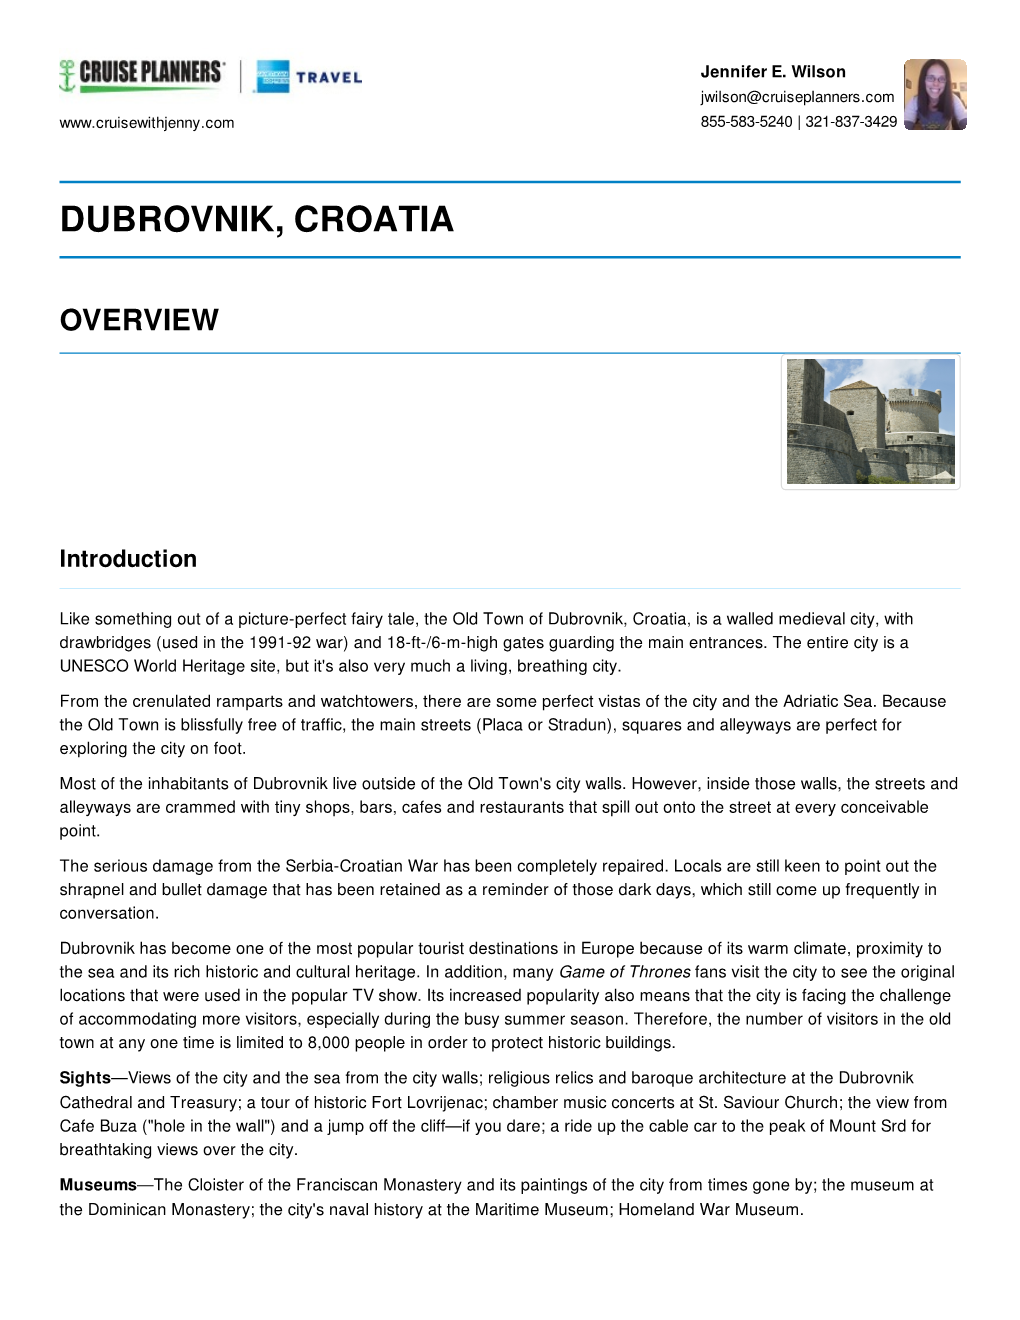 Dubrovnik, Croatia Overview